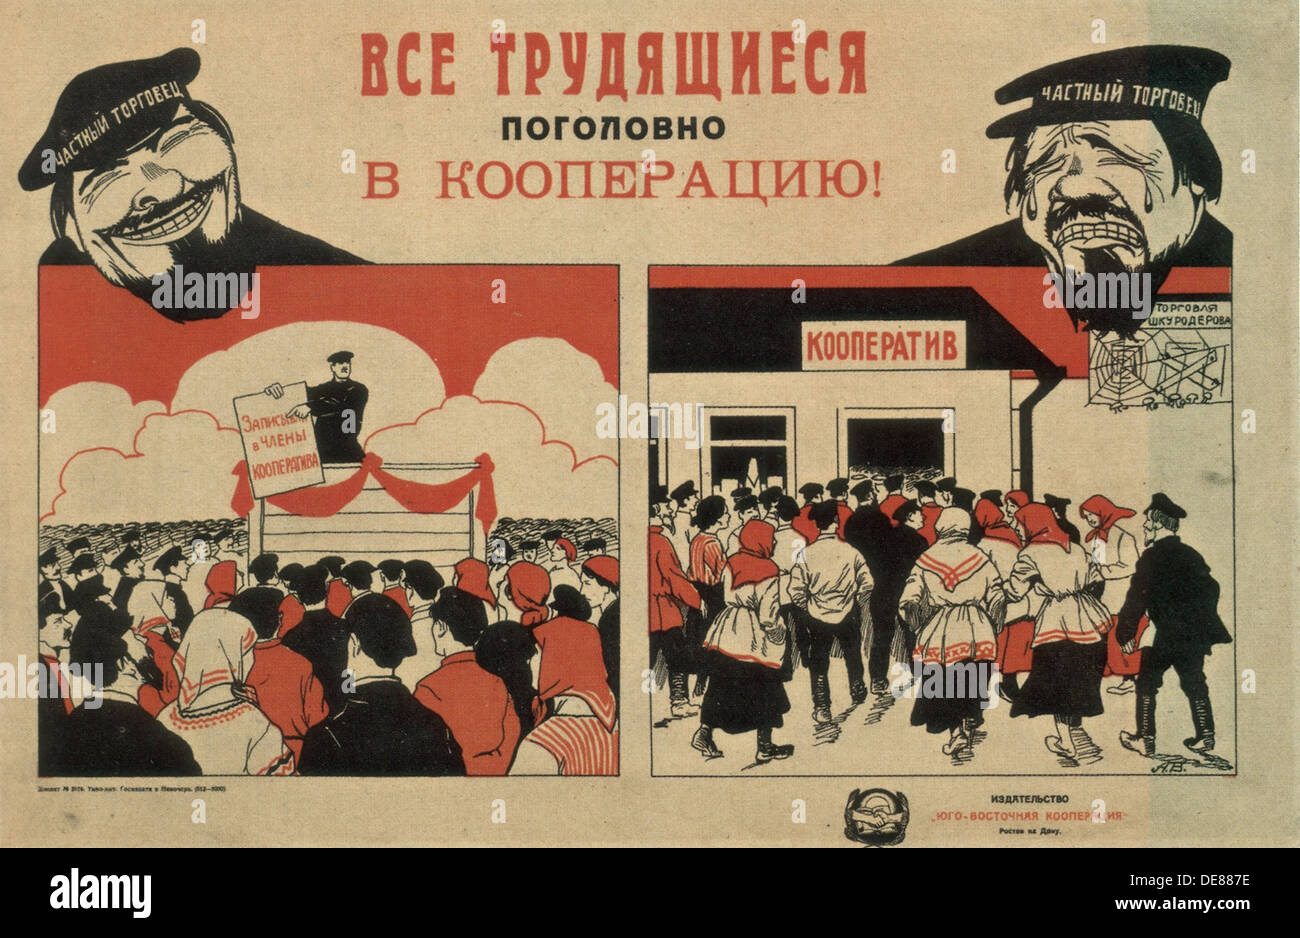 Рабочая кооперация. НЭП плакаты 1921. Кооператив плакат СССР. Новая экономическая политика плакаты НЭП. НЭП плакаты кооперация.